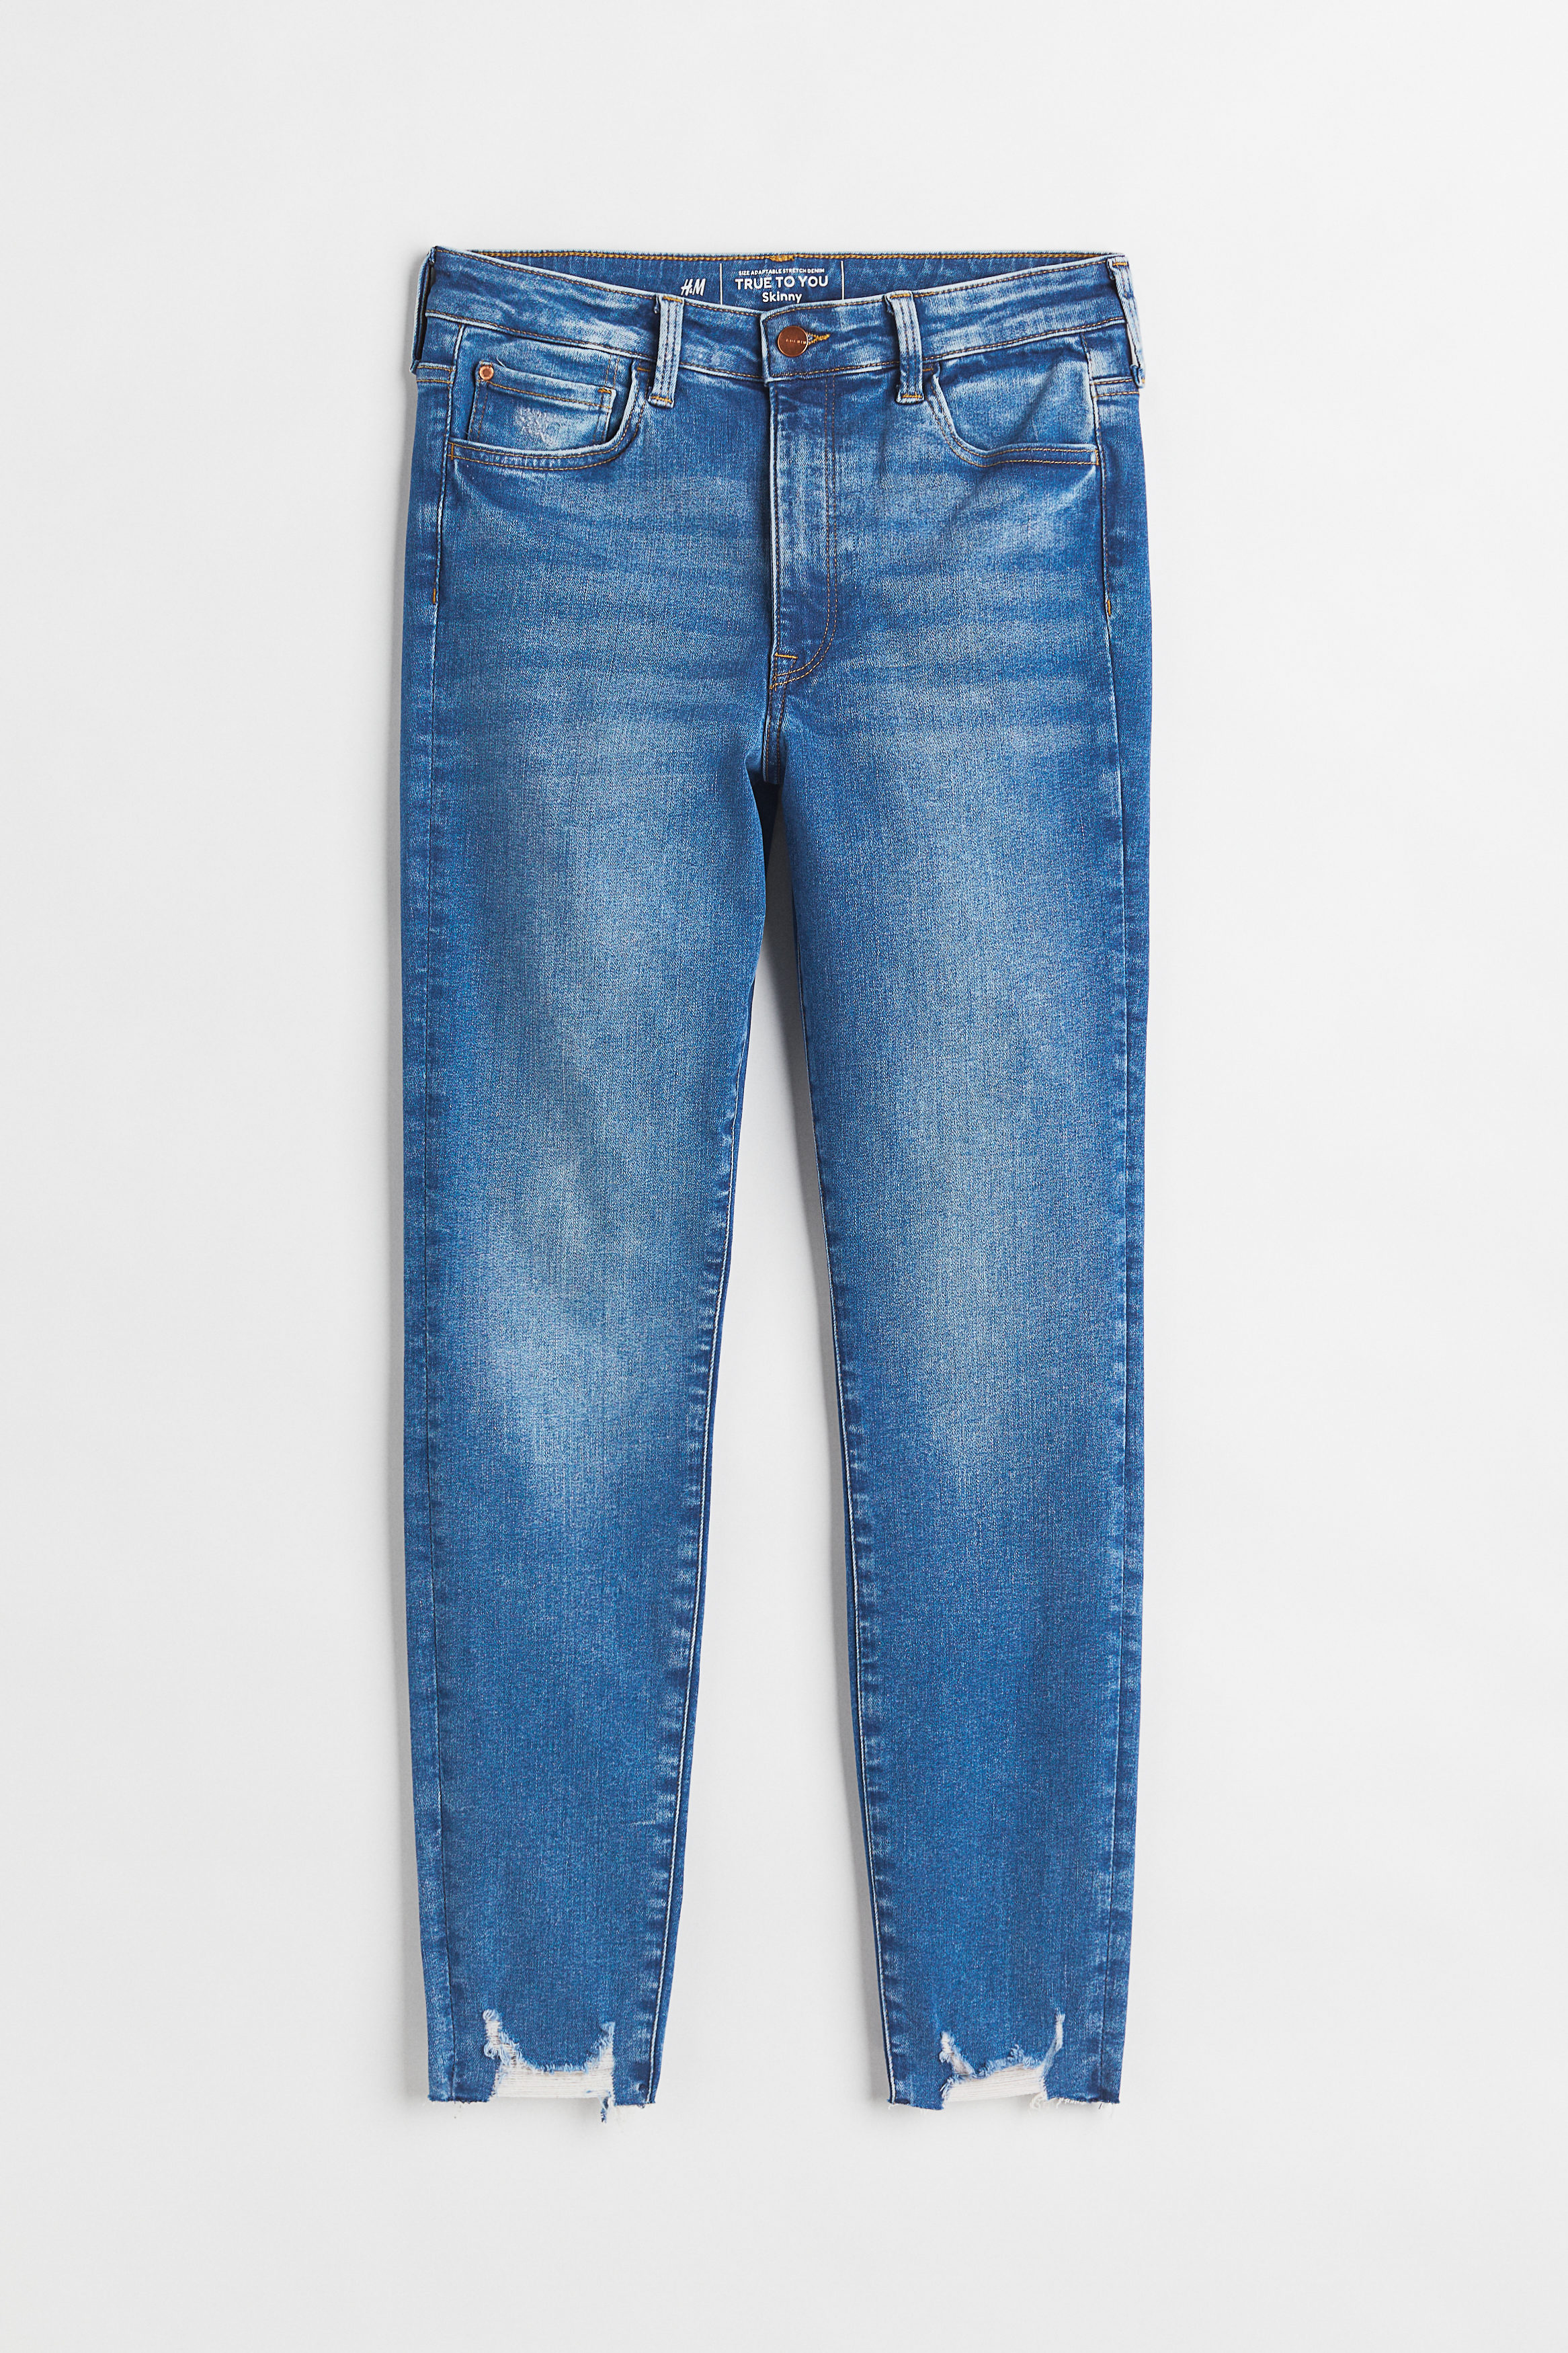 Billede af H&m+ True To You Skinny High Jeans Denimblå, jeans. Farve: Denim blue 012 I størrelse 4XL